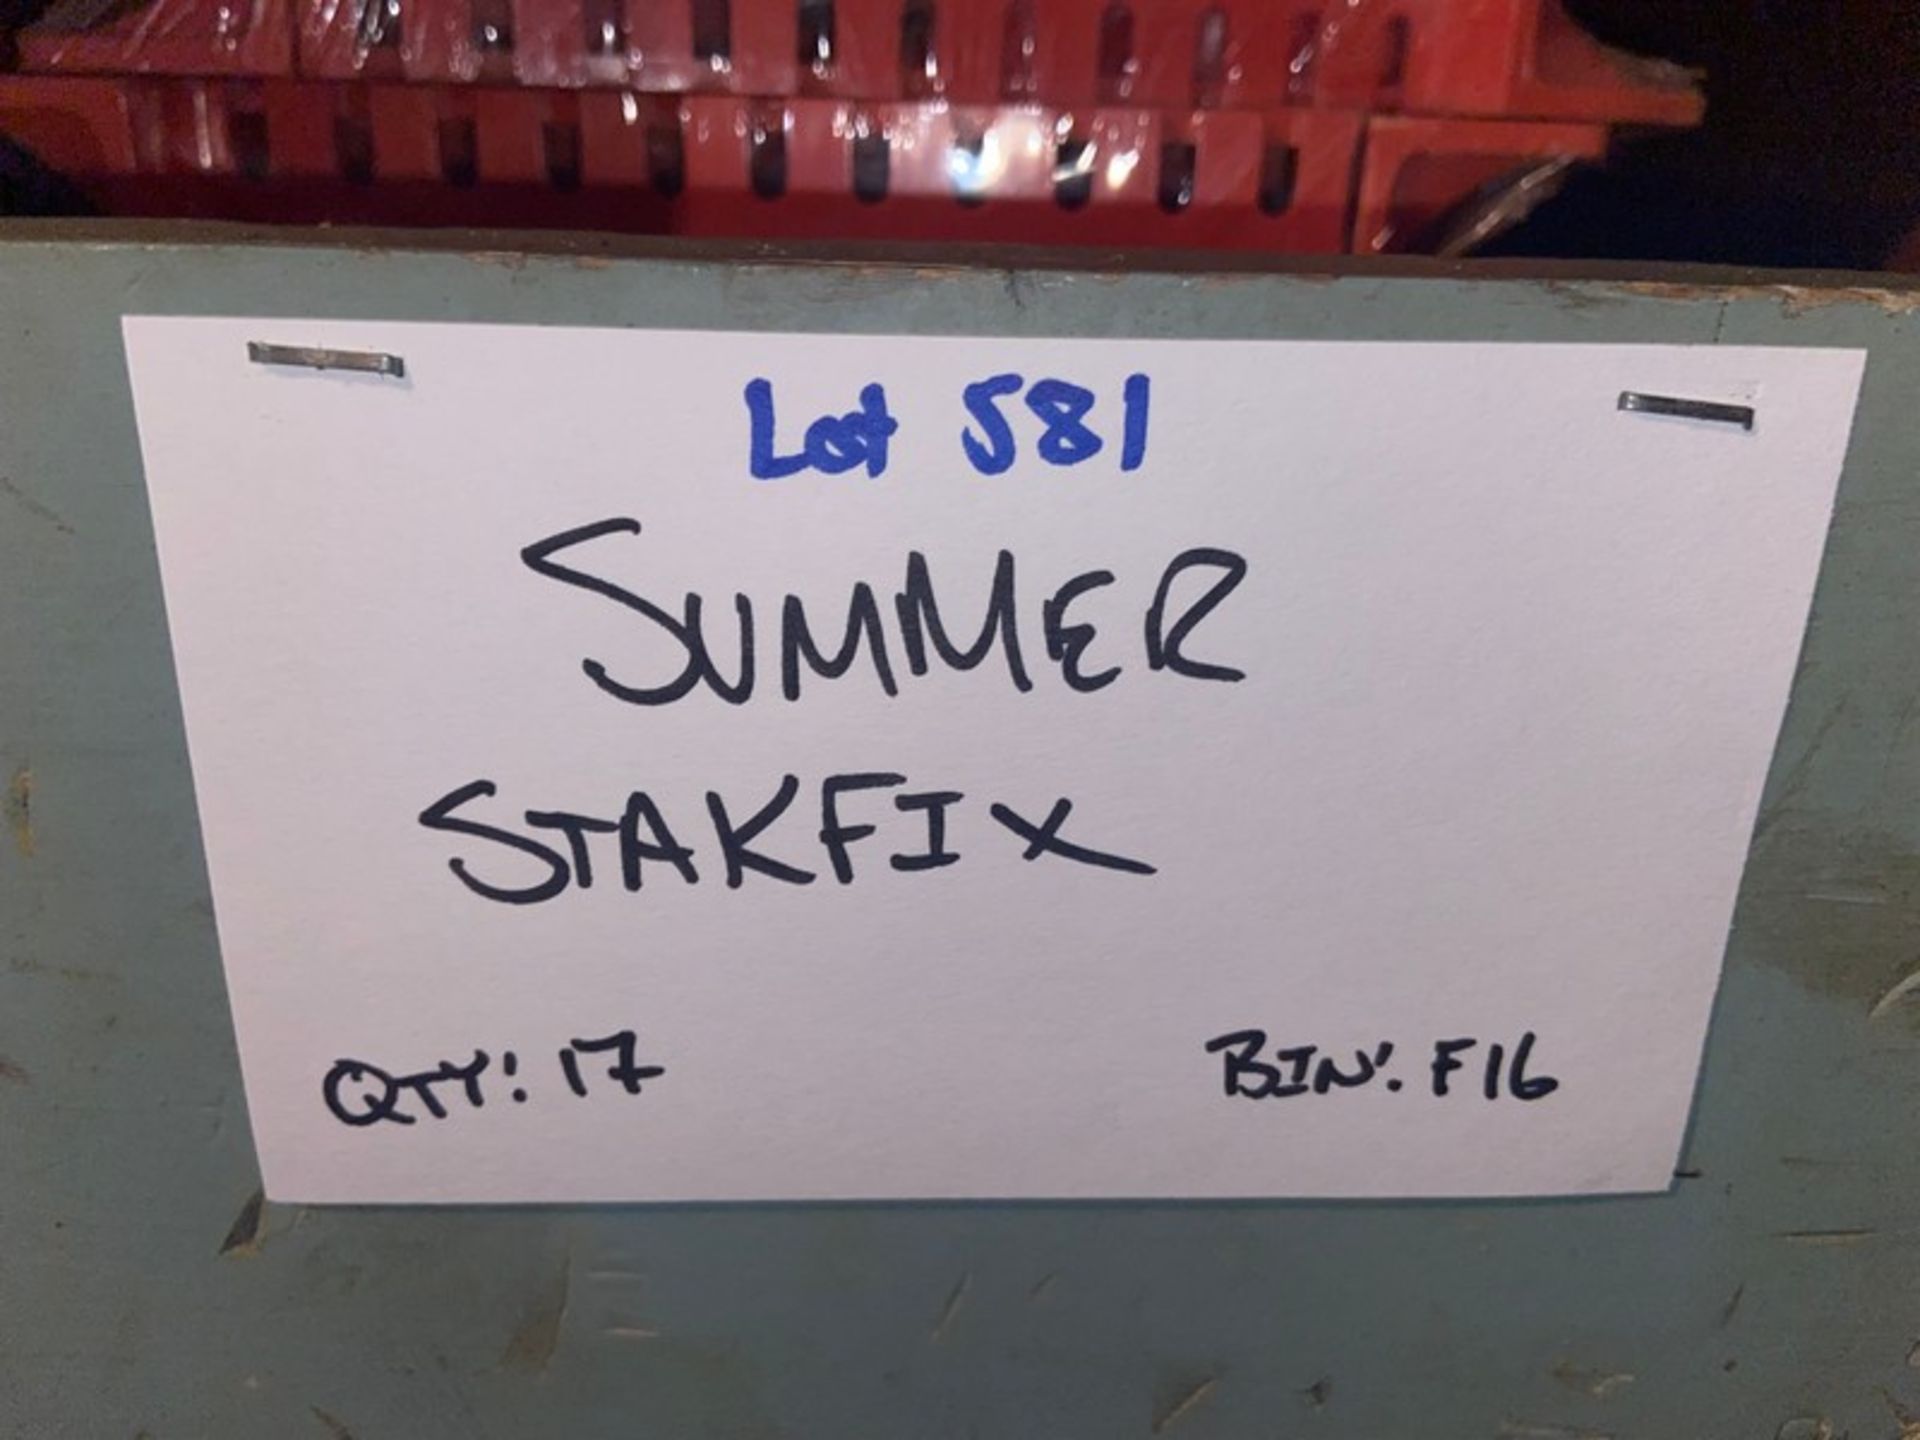 (17) Summer Stakfix (Bin:F16) (LOCATED IN MONROEVILLE, PA) - Bild 5 aus 5